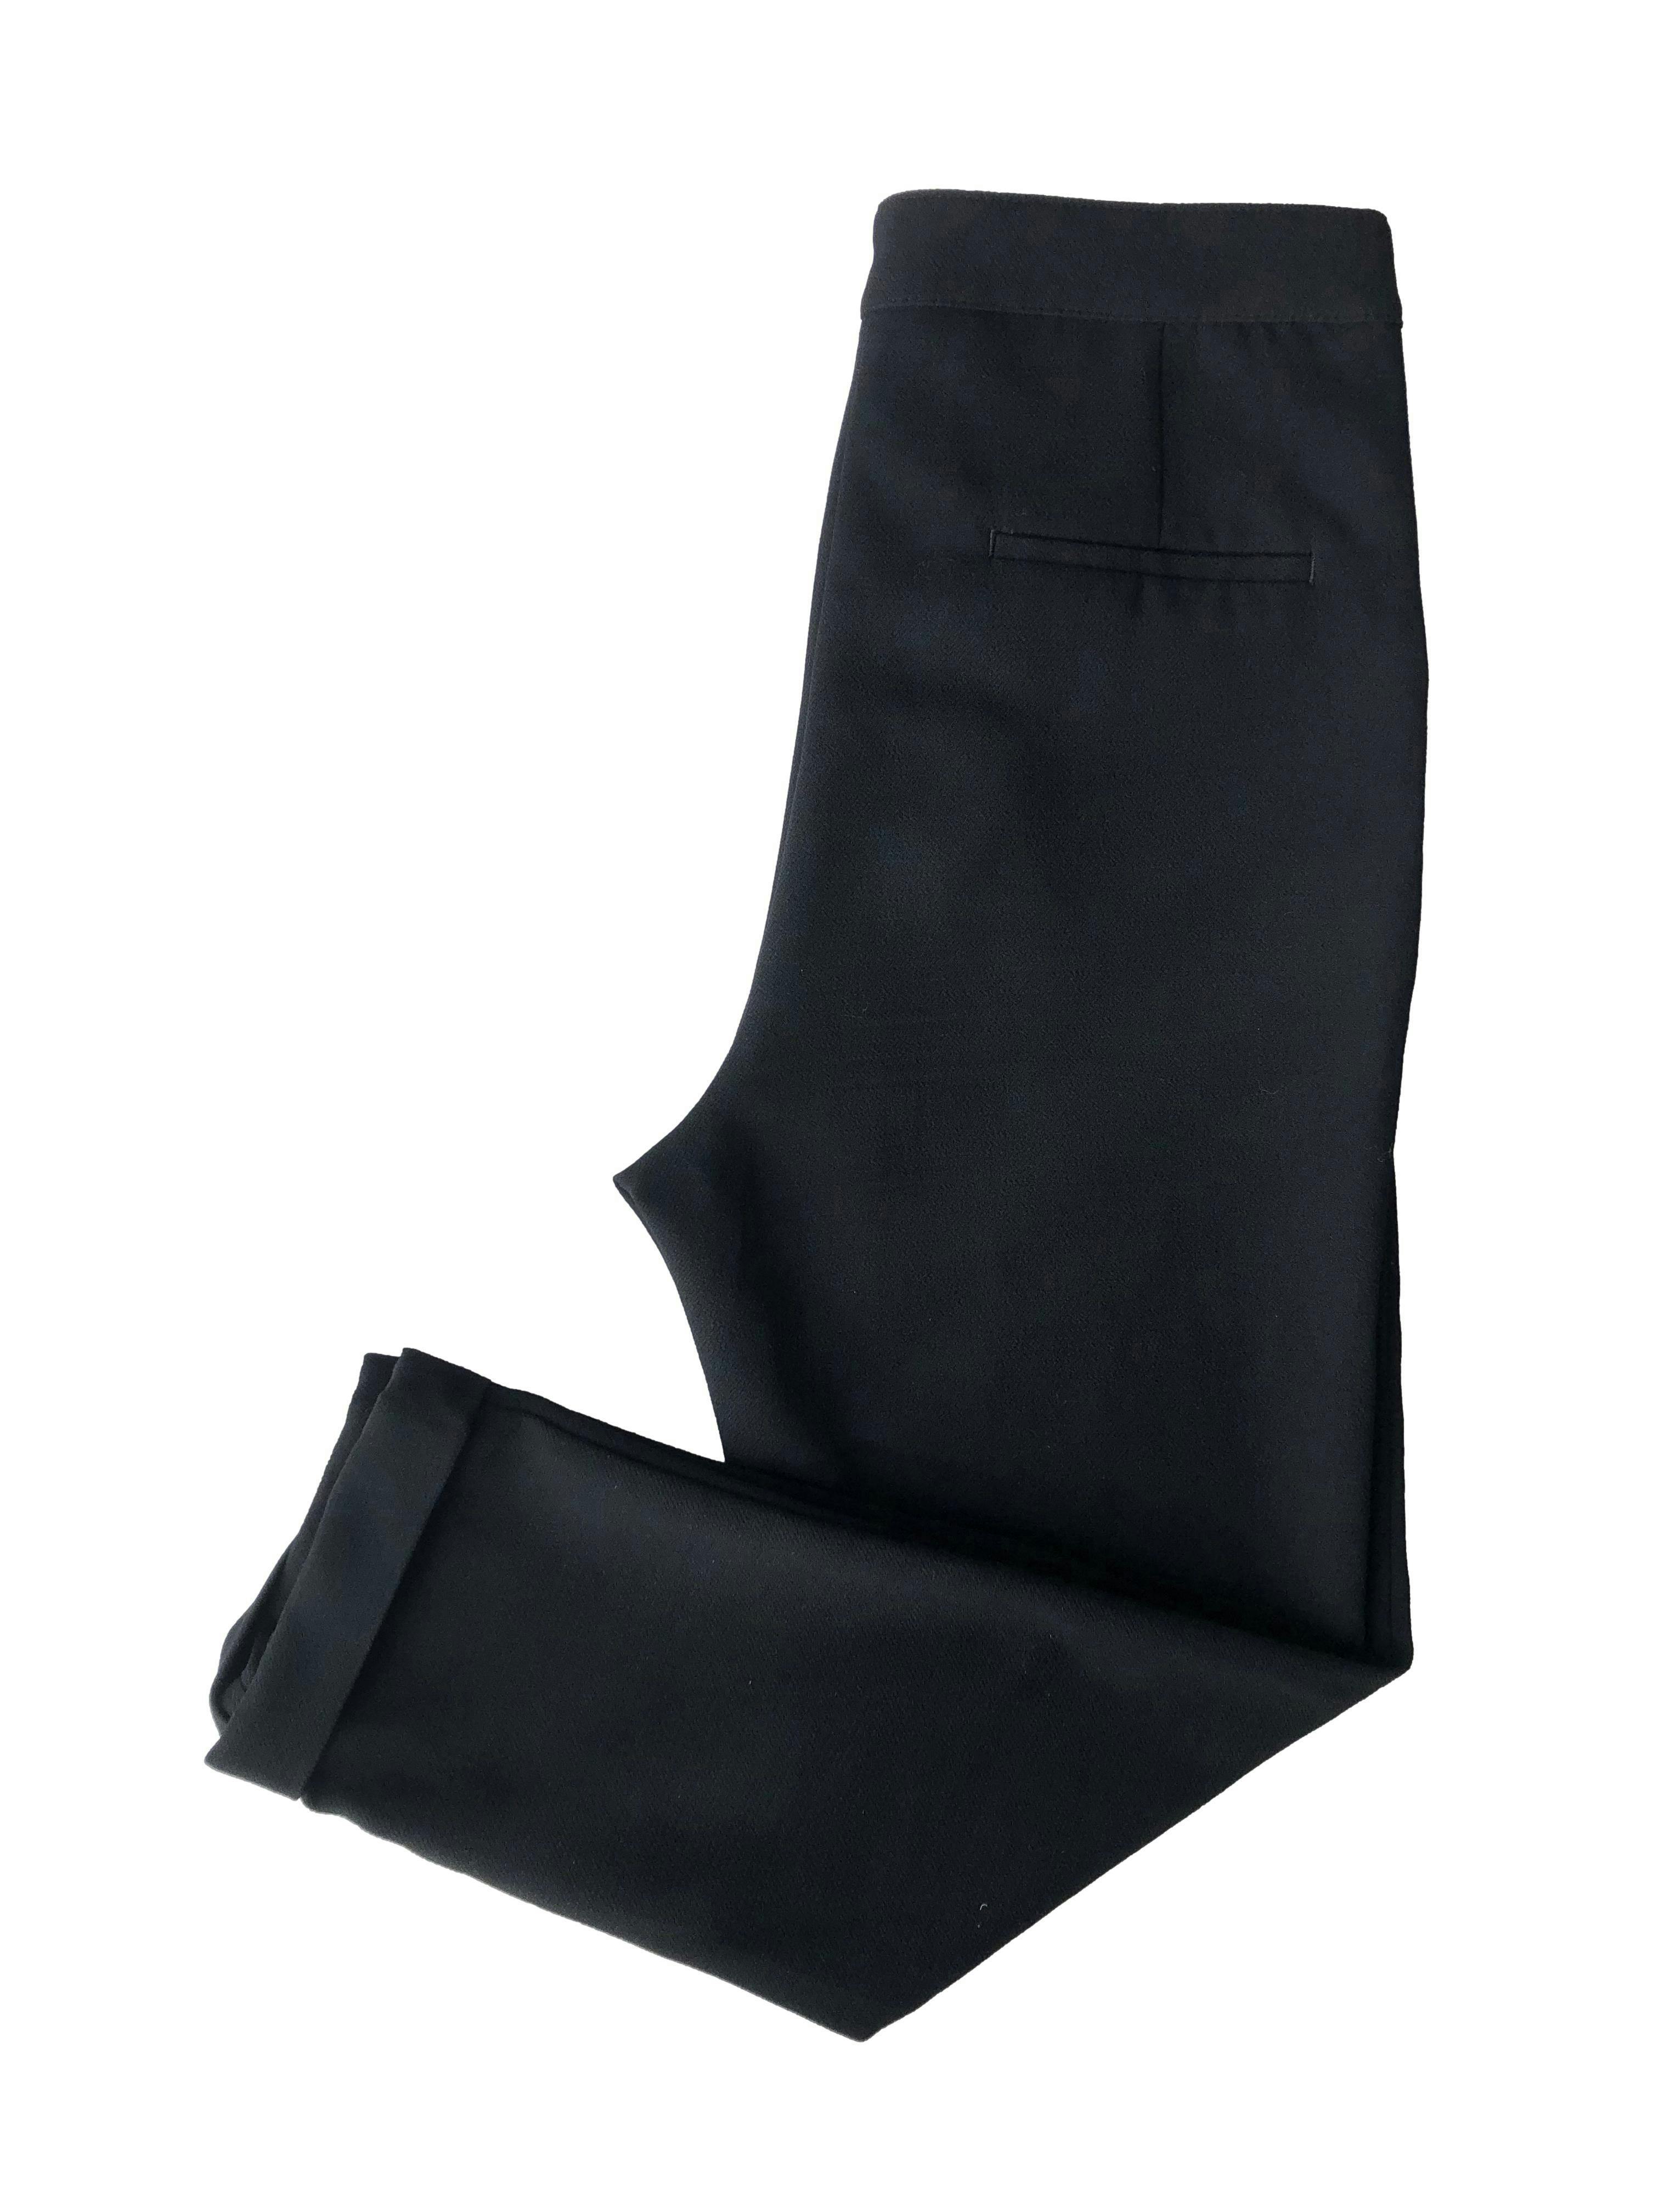 Pantalón negro Pull & Bear, corte slim con pinzas, bolsillos delanteros, falsos bolsillos posteriores y dobladillo en botapie. Cintura 76cm, Largo 92cm.